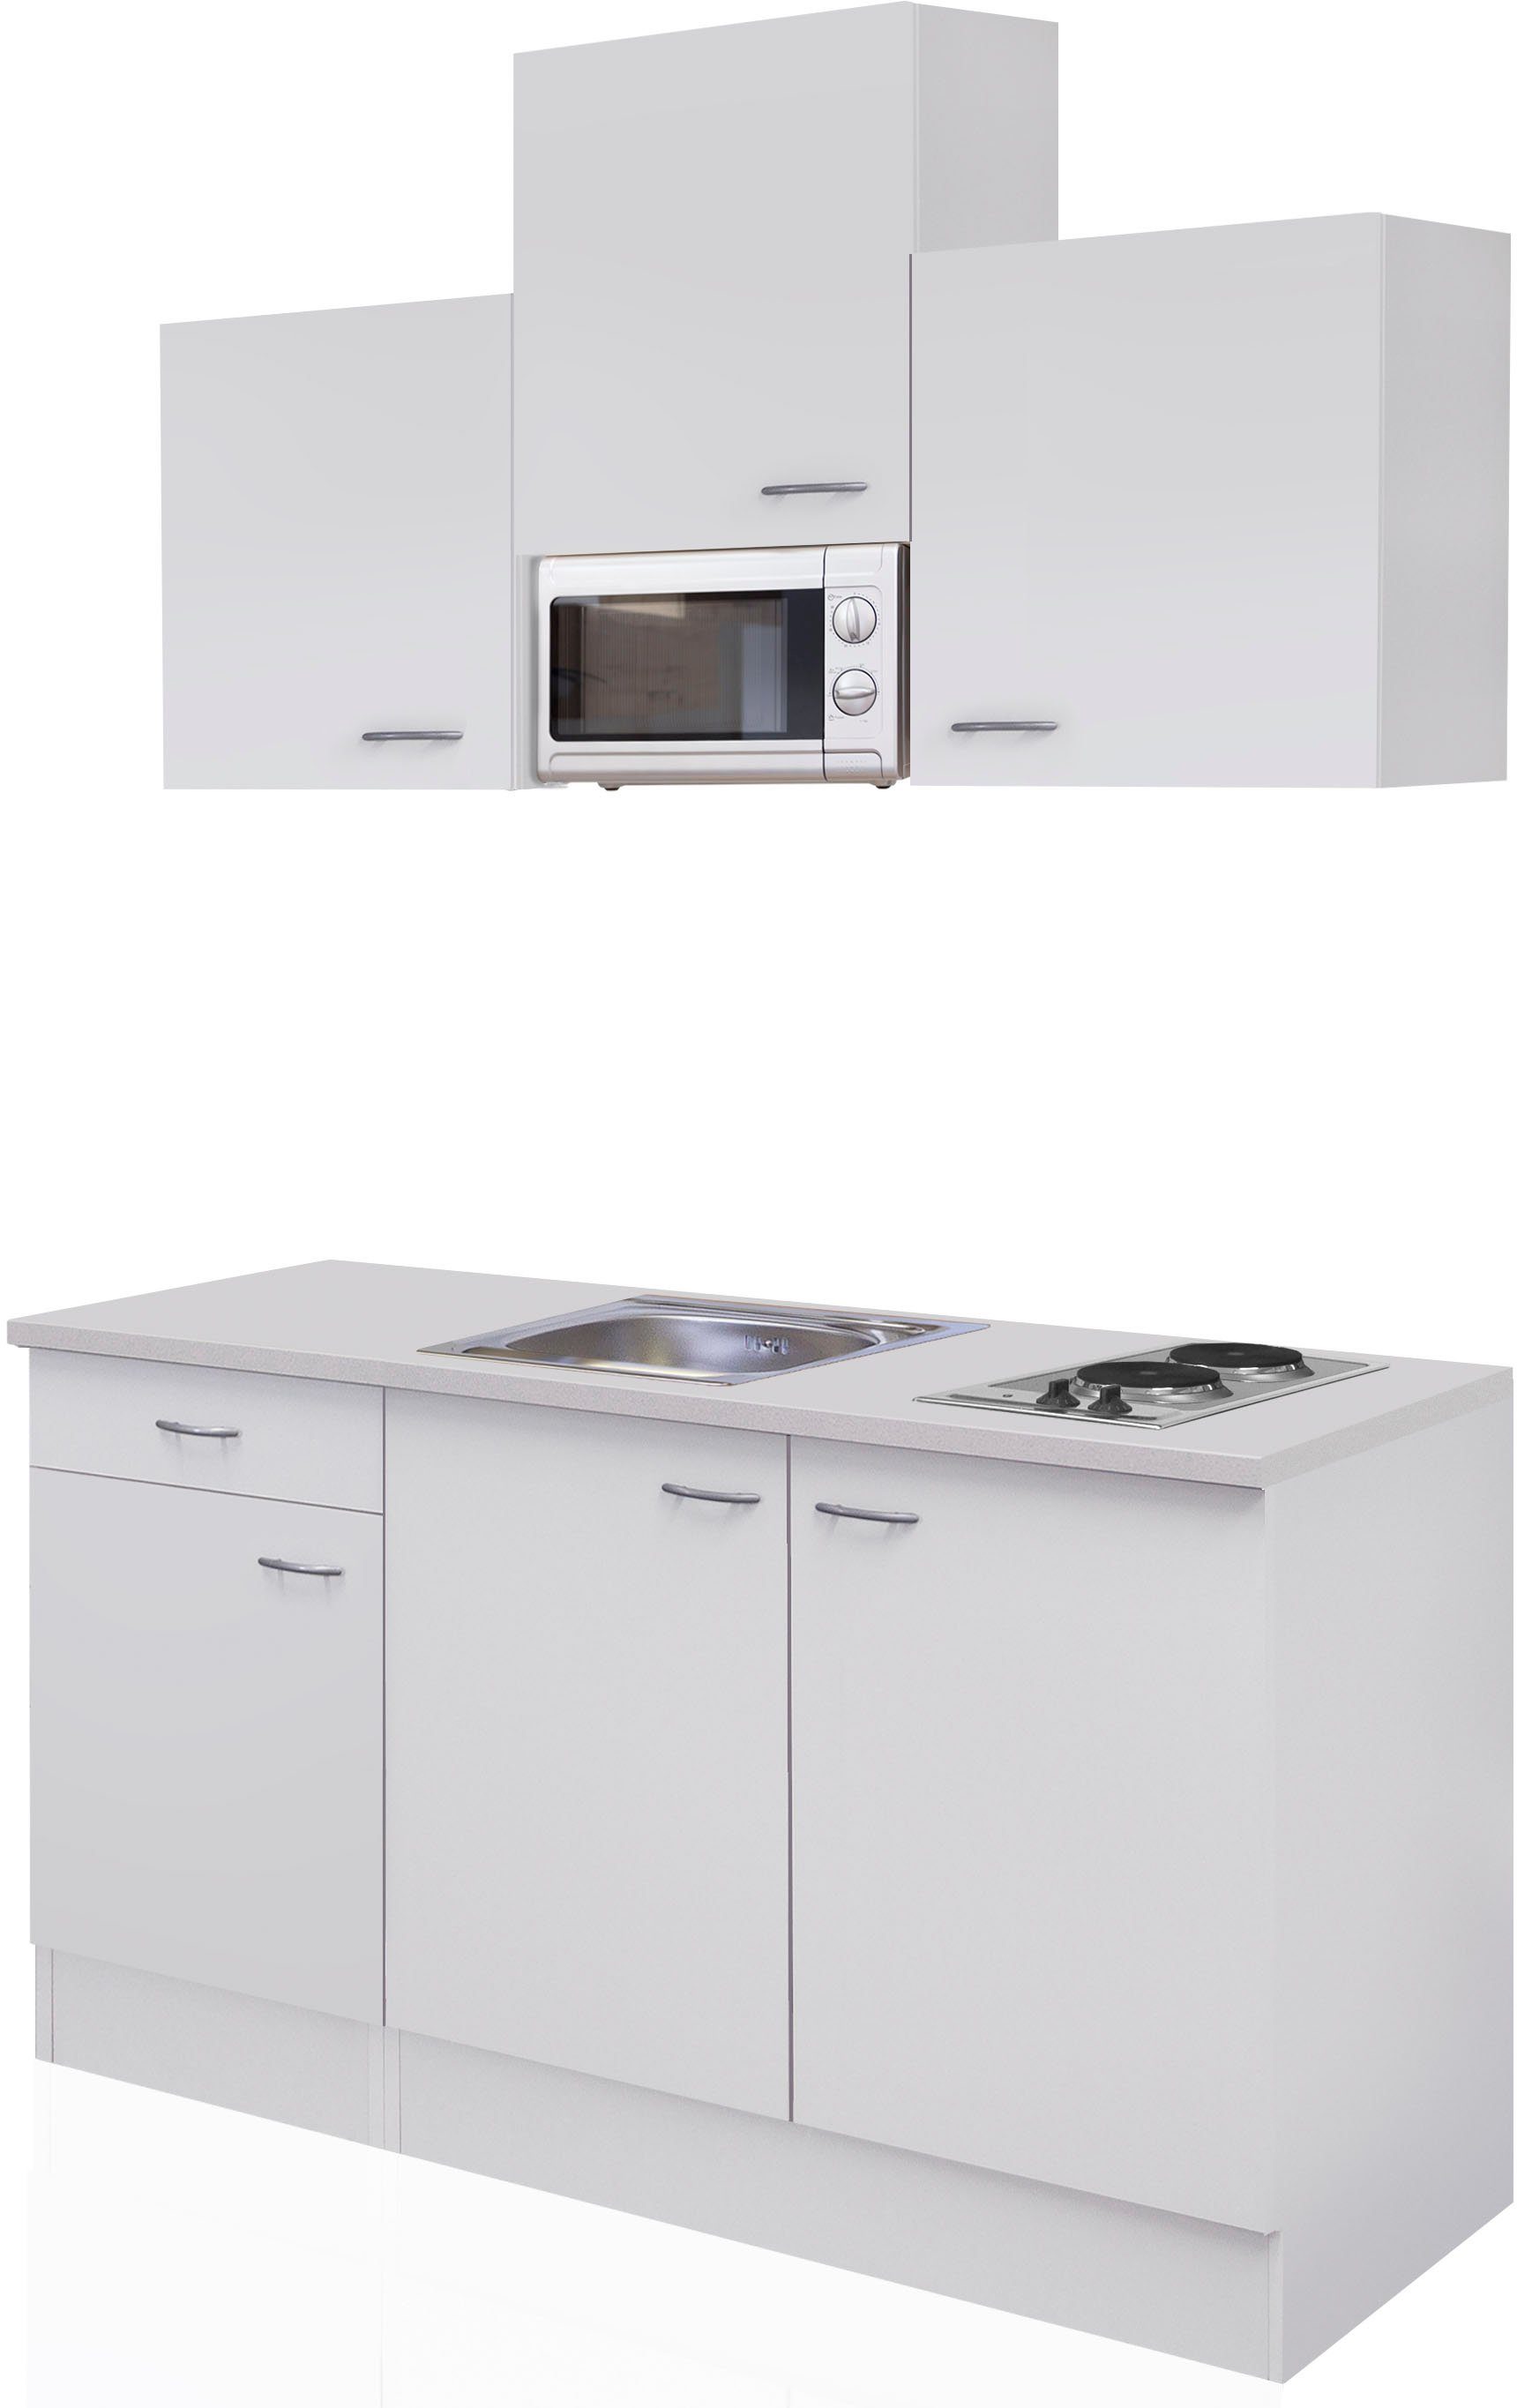 Flex-Well Küche Wito, Gesamtbreite 150cm, mit Mikrowelle und Kochfeld,  viele Farbenvarianten